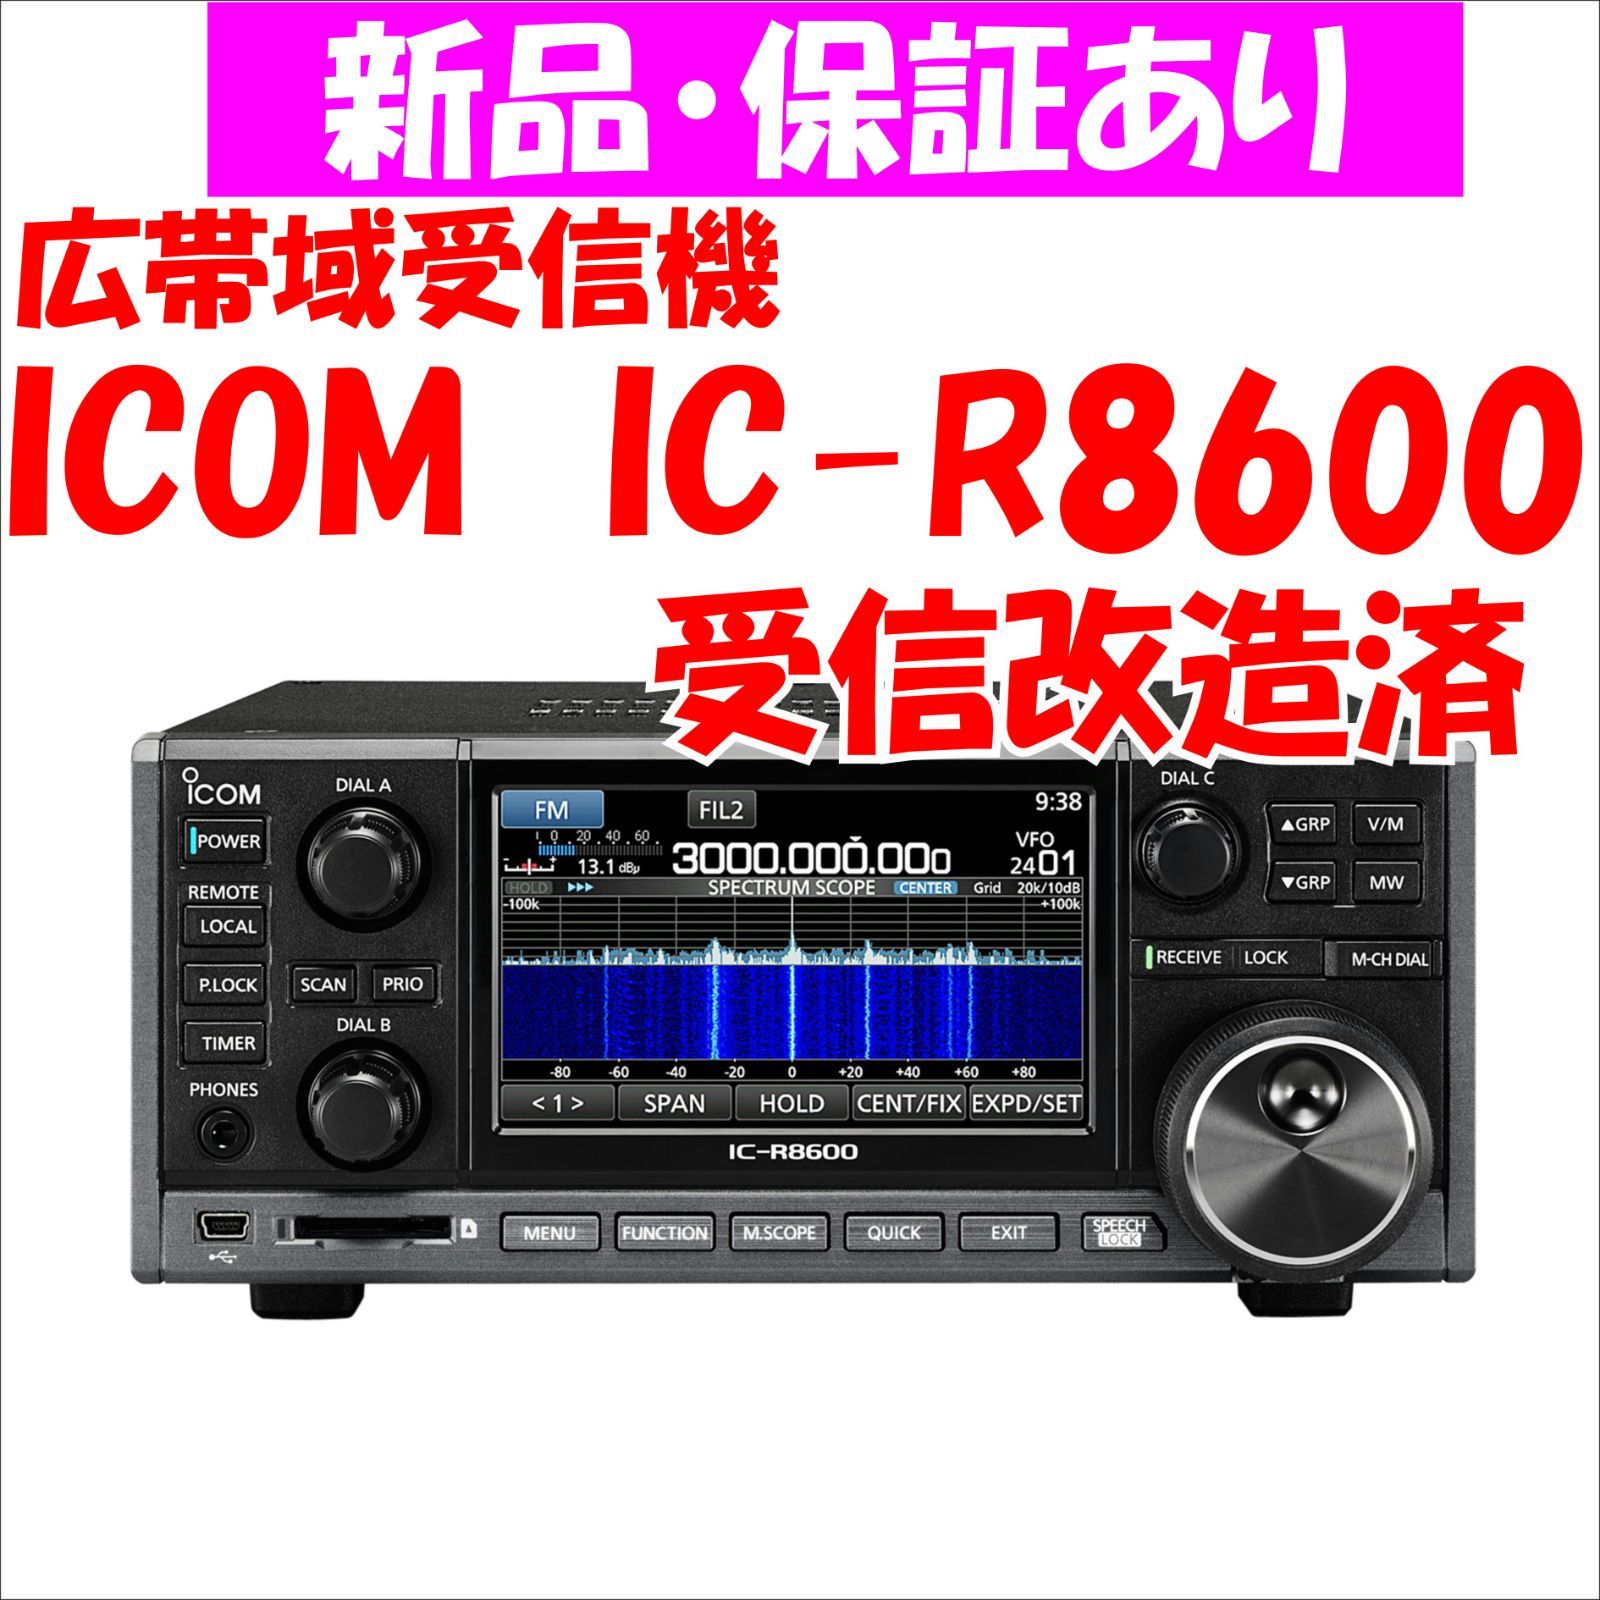 新品】IC-R8600 受信改造済 ICOM コミュニケーションレシーバー 10kHz